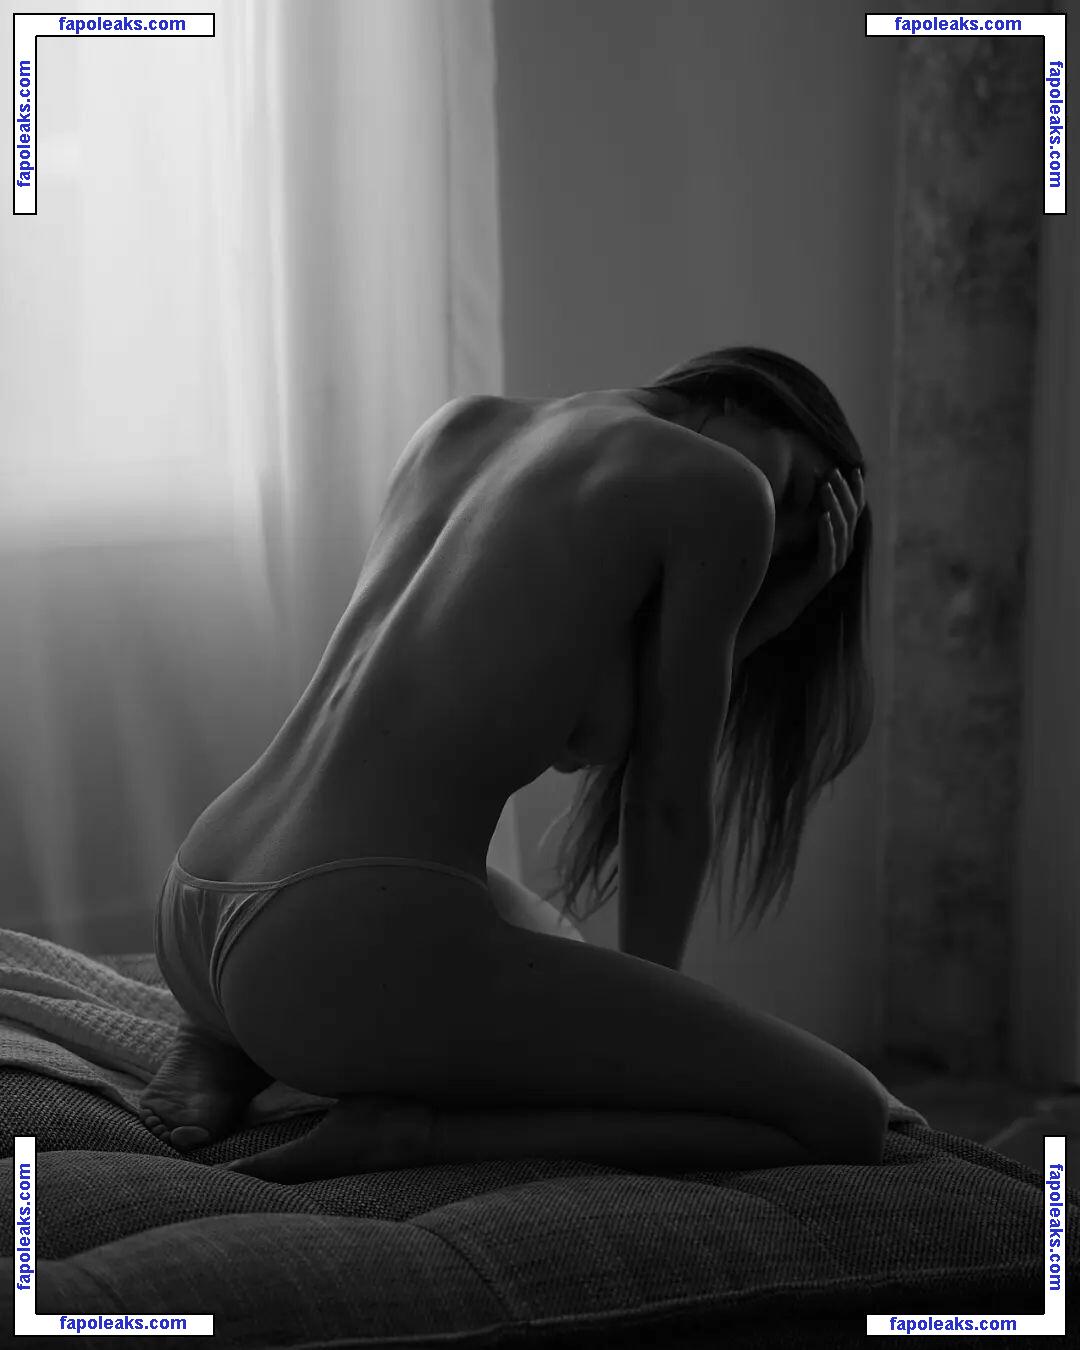 Chloe Bonhaure / chloebonhaure / chloewildd nude photo #0063 from OnlyFans